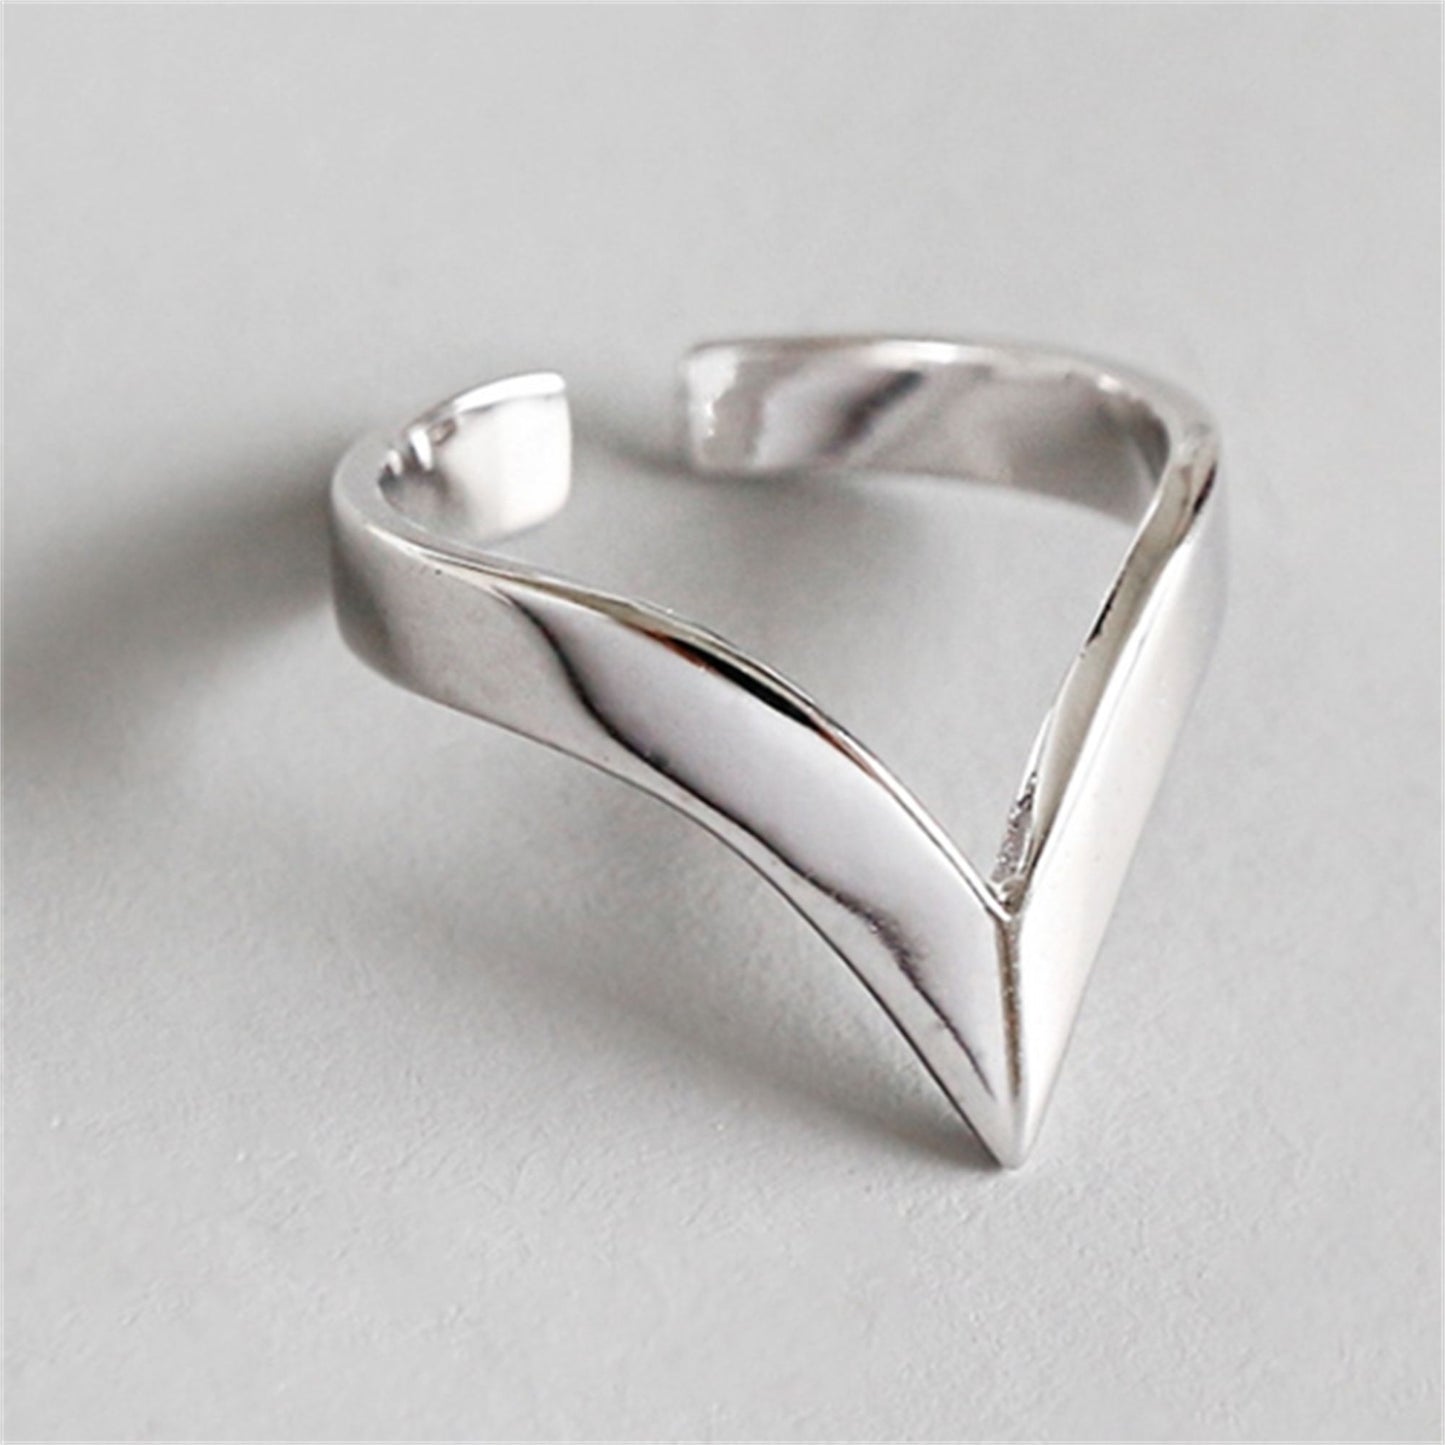 Sterling Silver Chevron Adjustable Ring: A Minimalist, Versatile Statement Piece - sugarkittenlondon